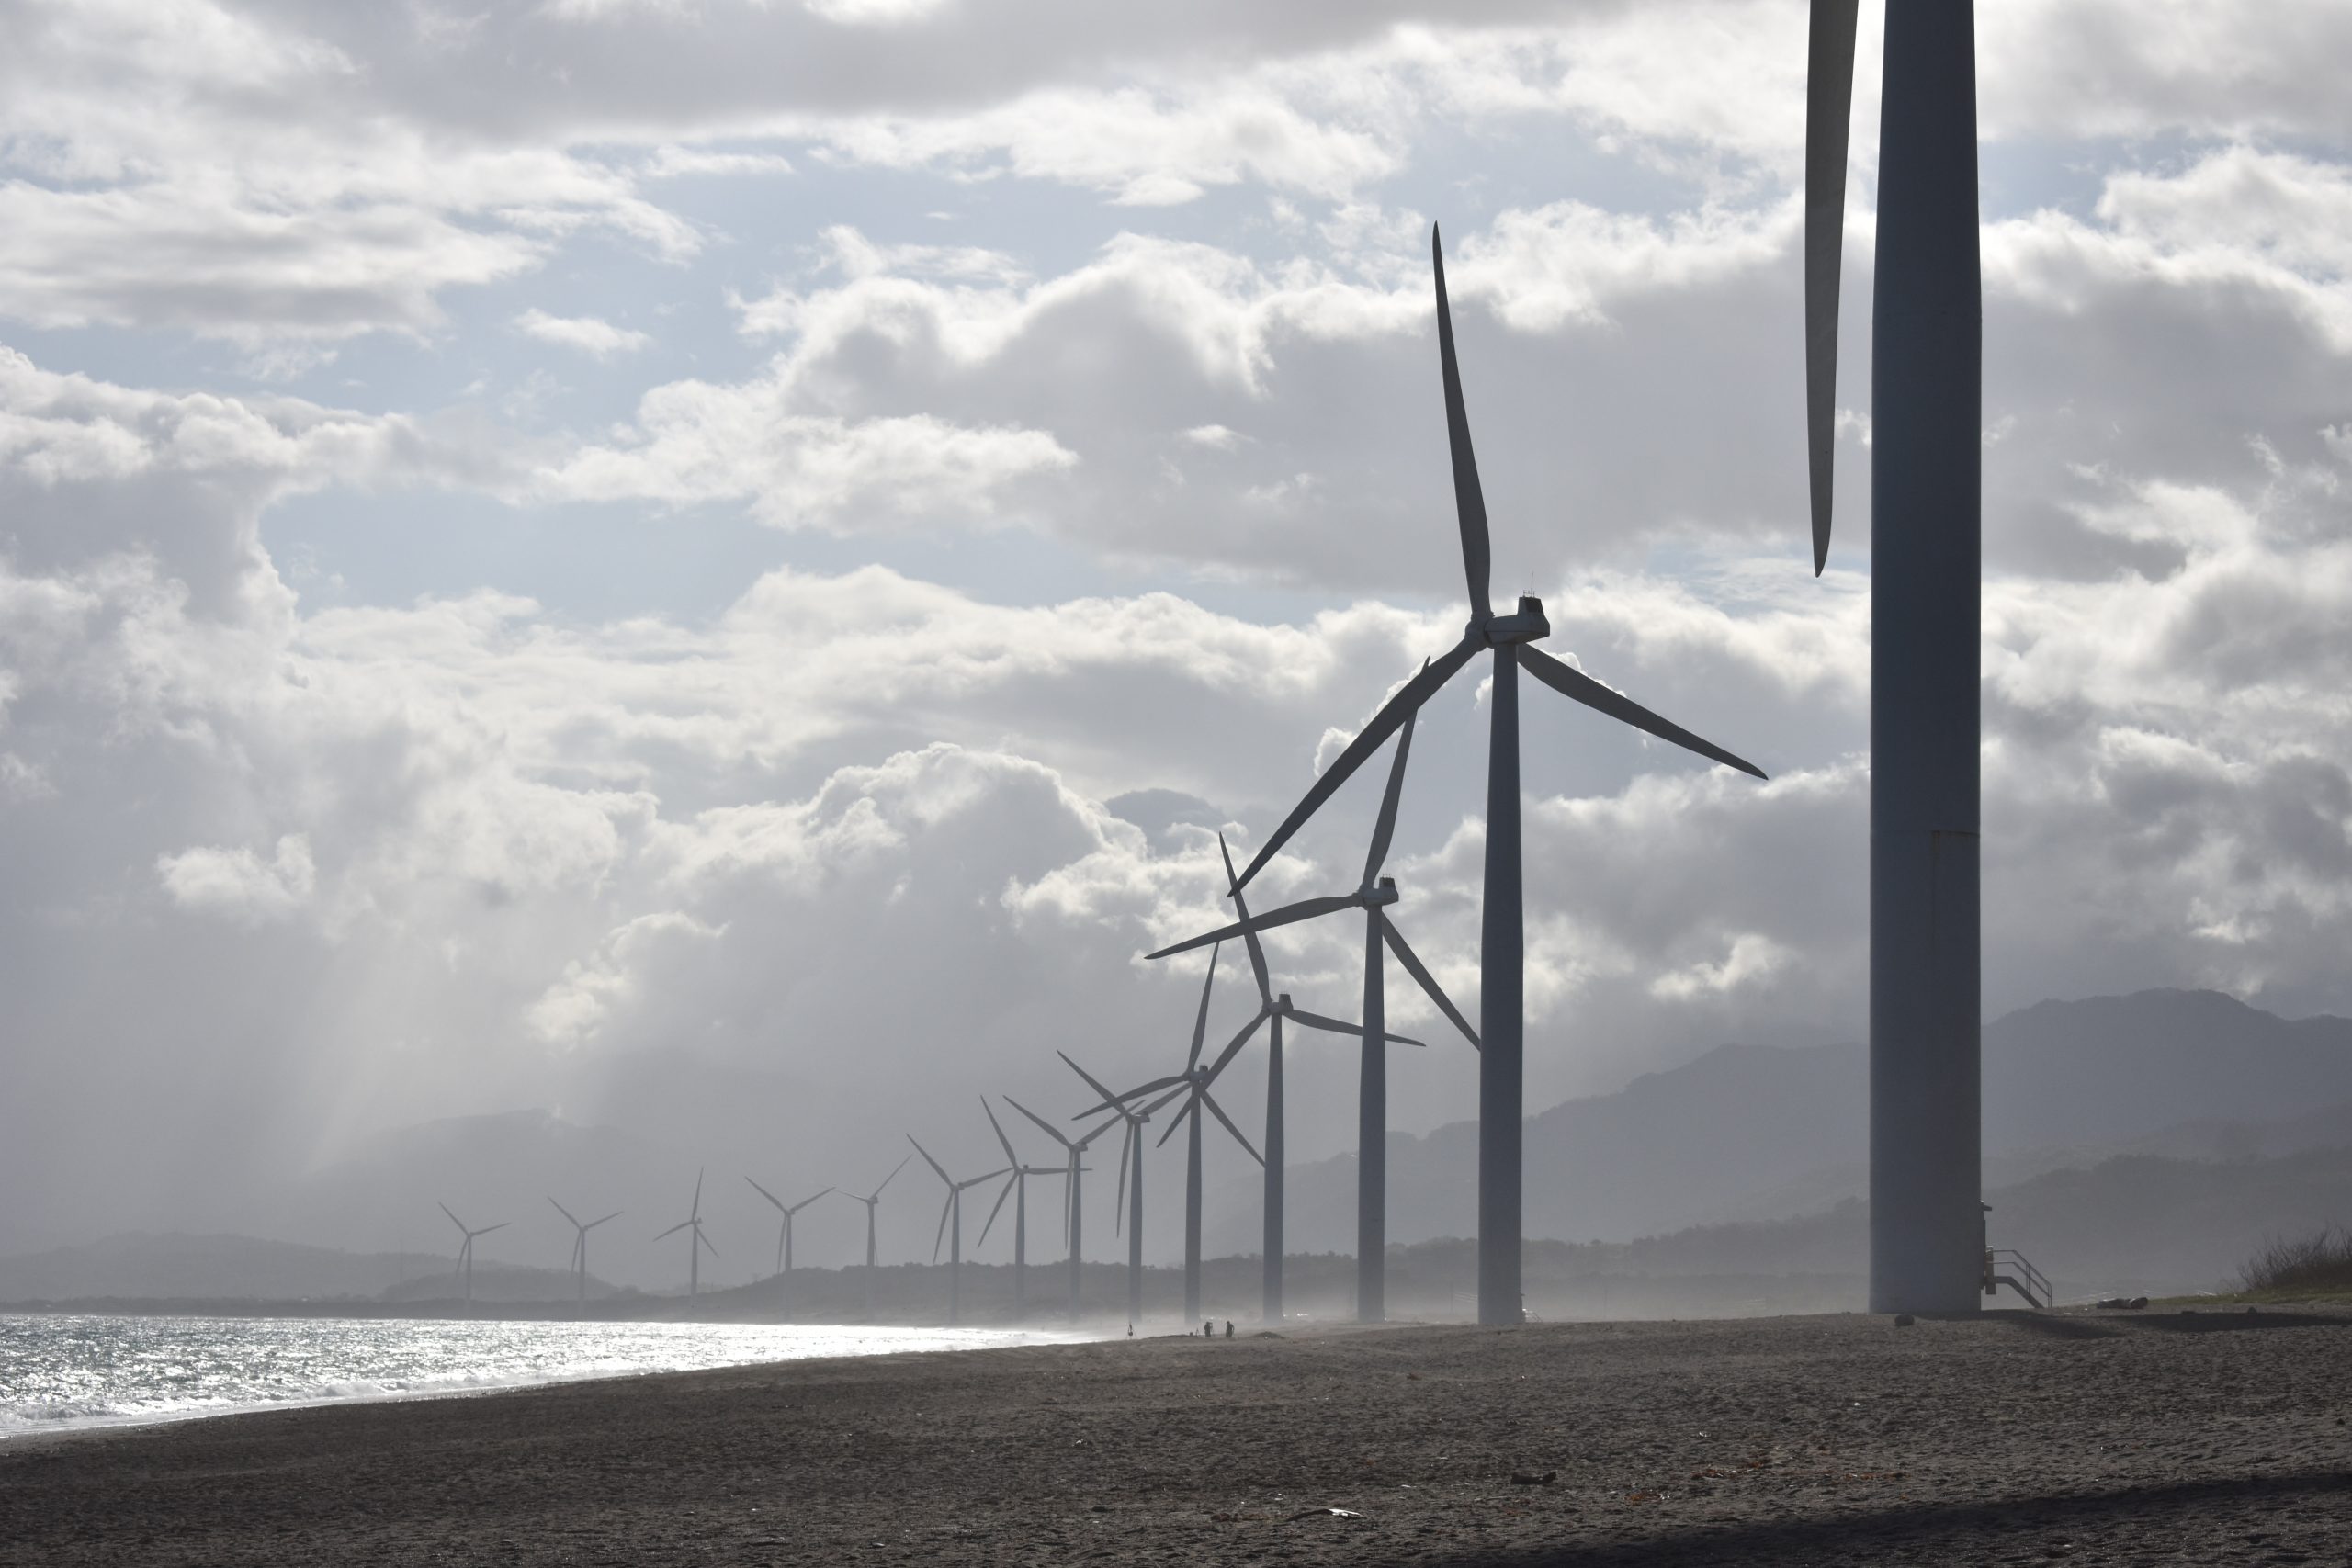 Im Bild sind verschiedene Windräder zu sehen, mit denen Klimafreundlich Energie erzeugt werden kann.